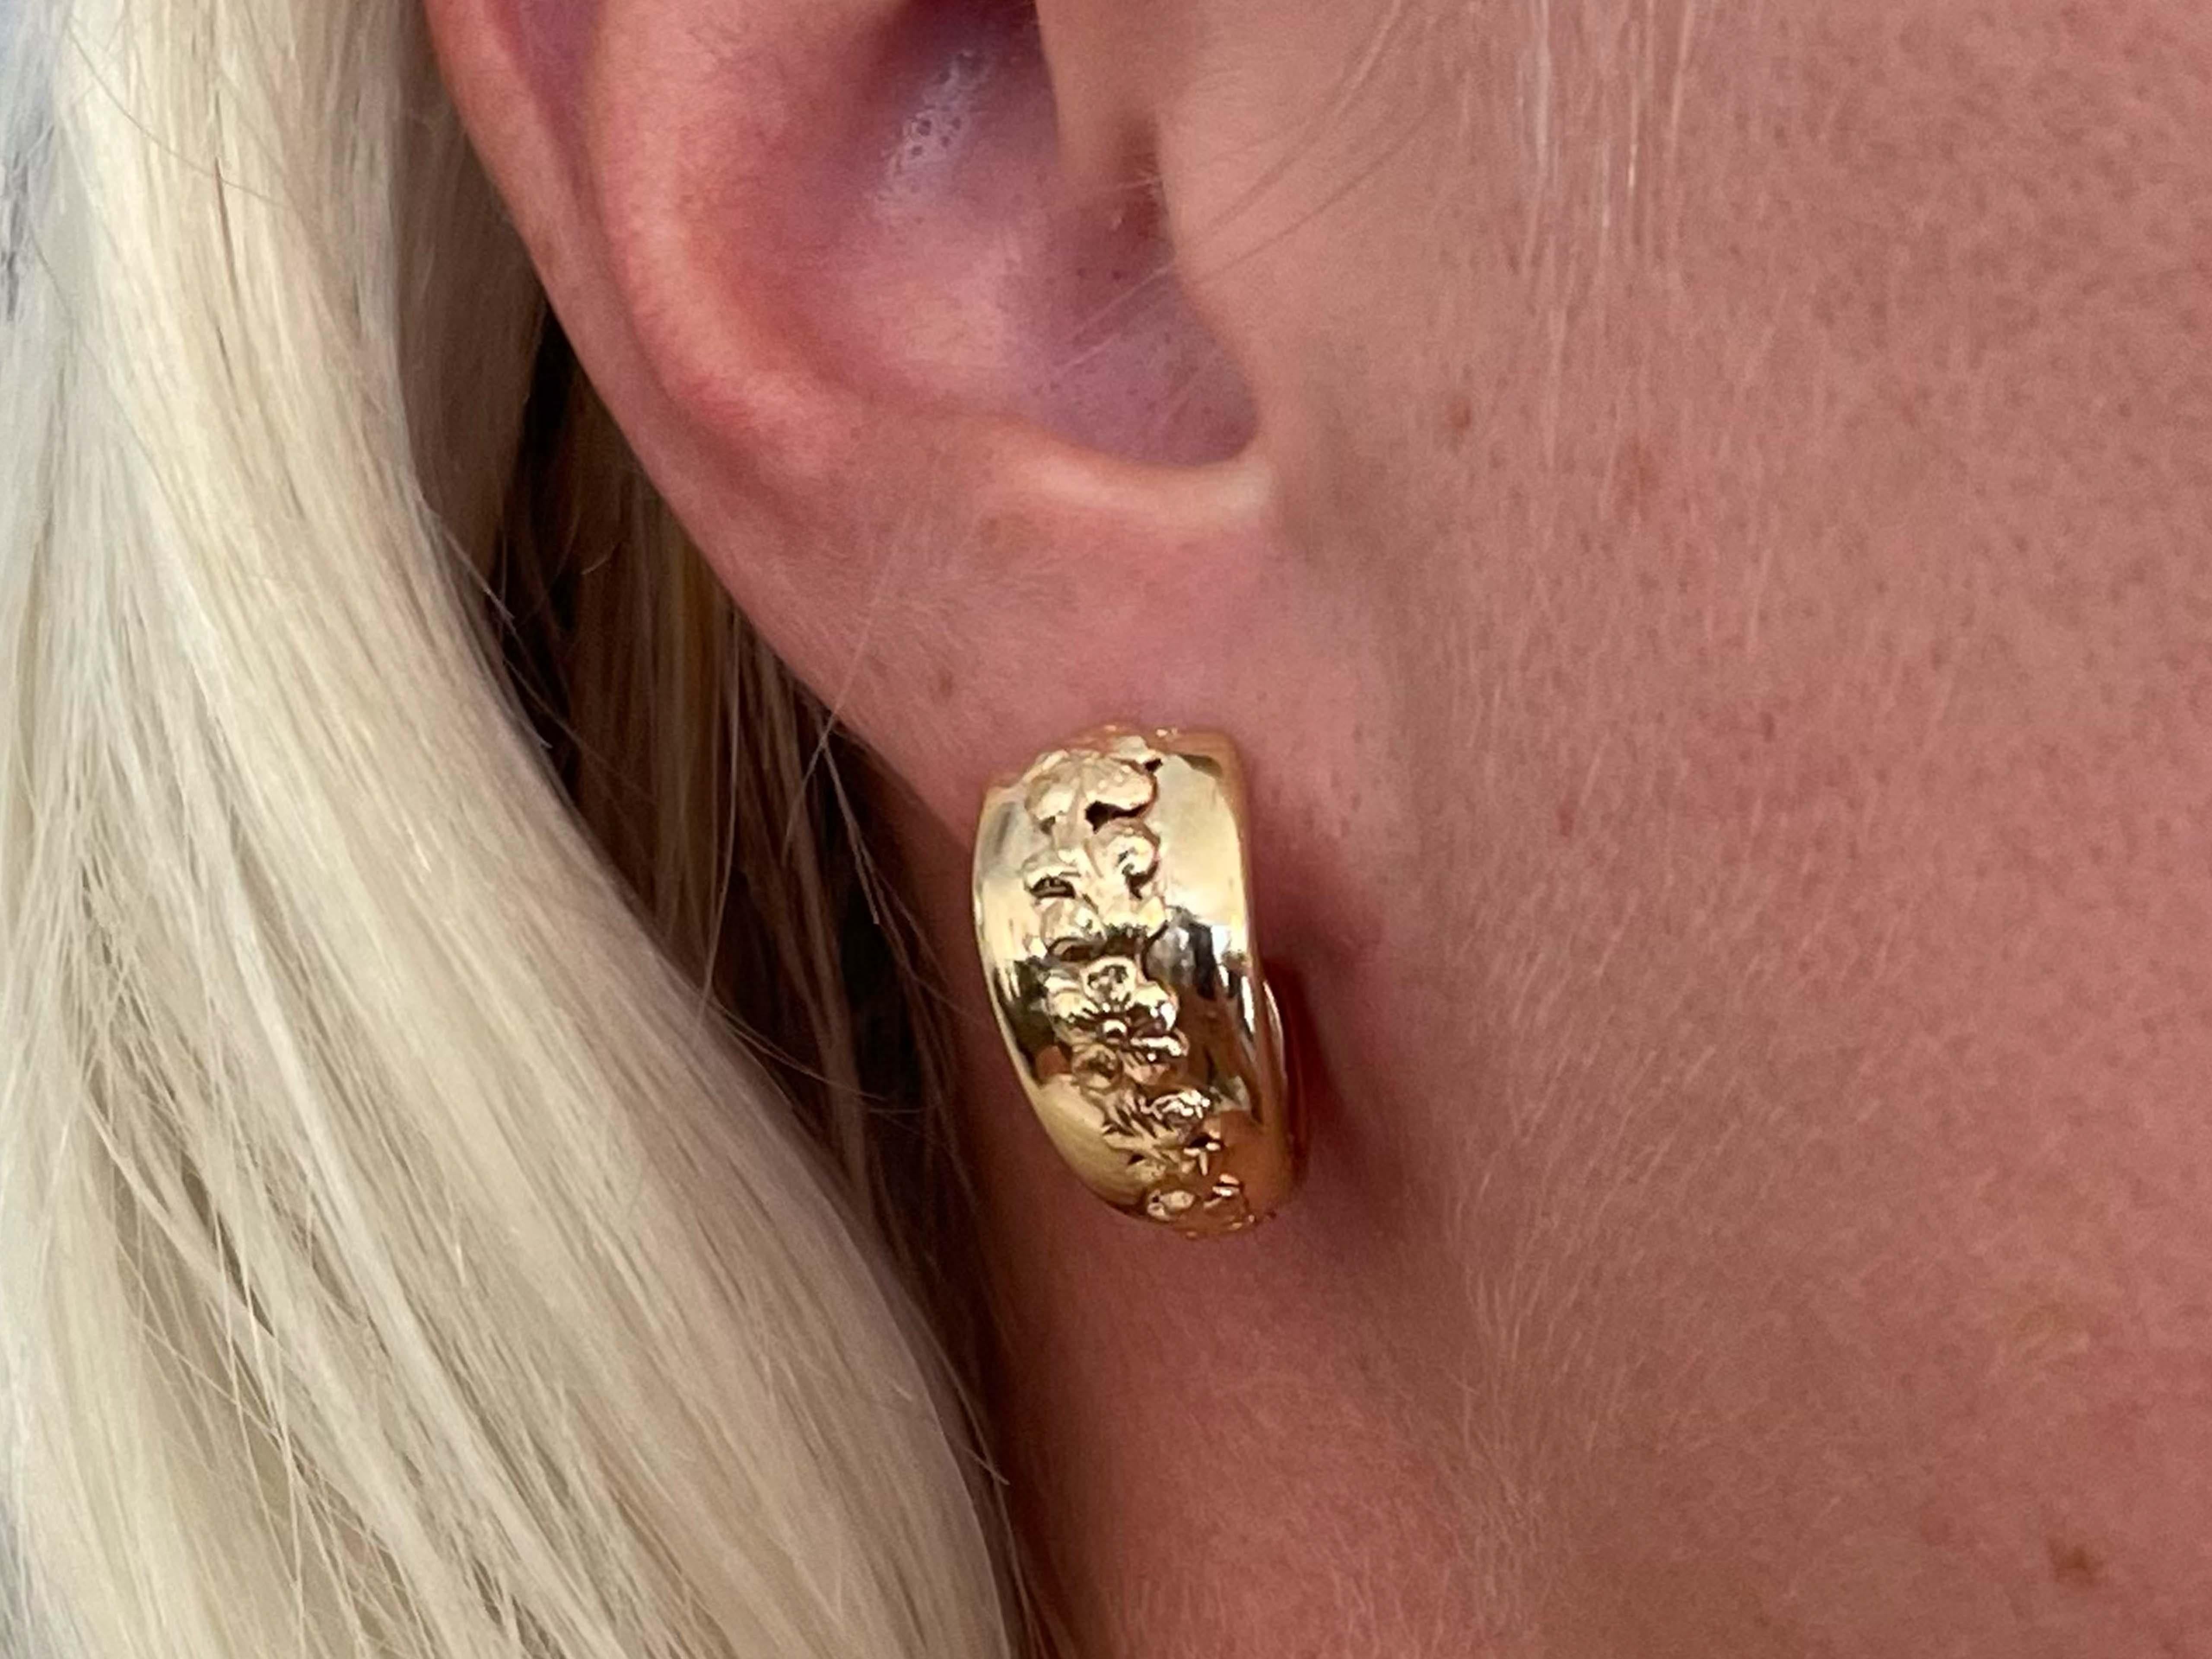 Earrings Specifications:

Designer: Ming's

Metal: 14K Yellow Gold

Total Weight: 7.7 Grams

Hoop Diameter: 21.72 mm

Stamped: 